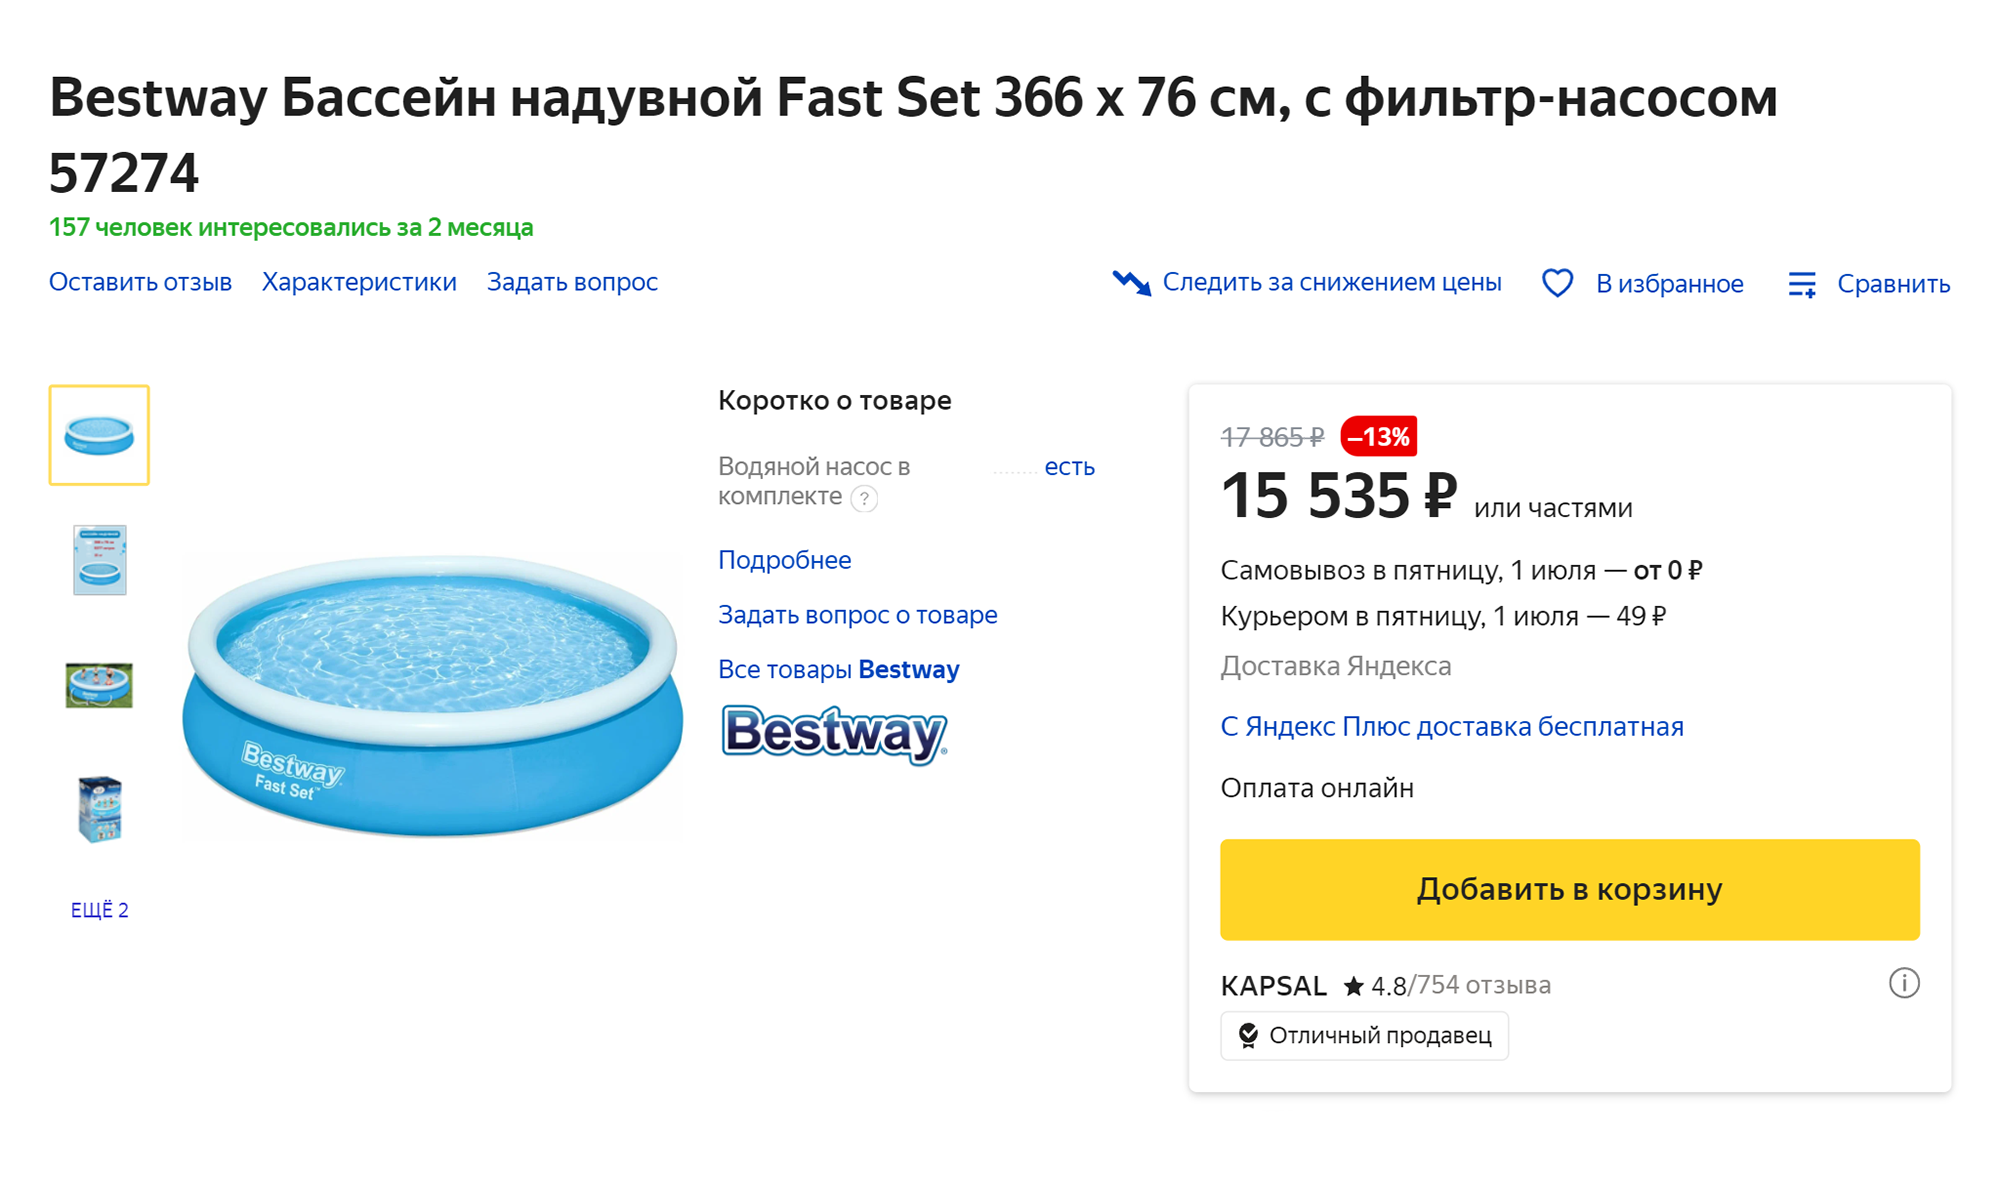 Сейчас небольшой надувной бассейн можно купить за 15 тысяч рублей. Источник: market.yandex.ru